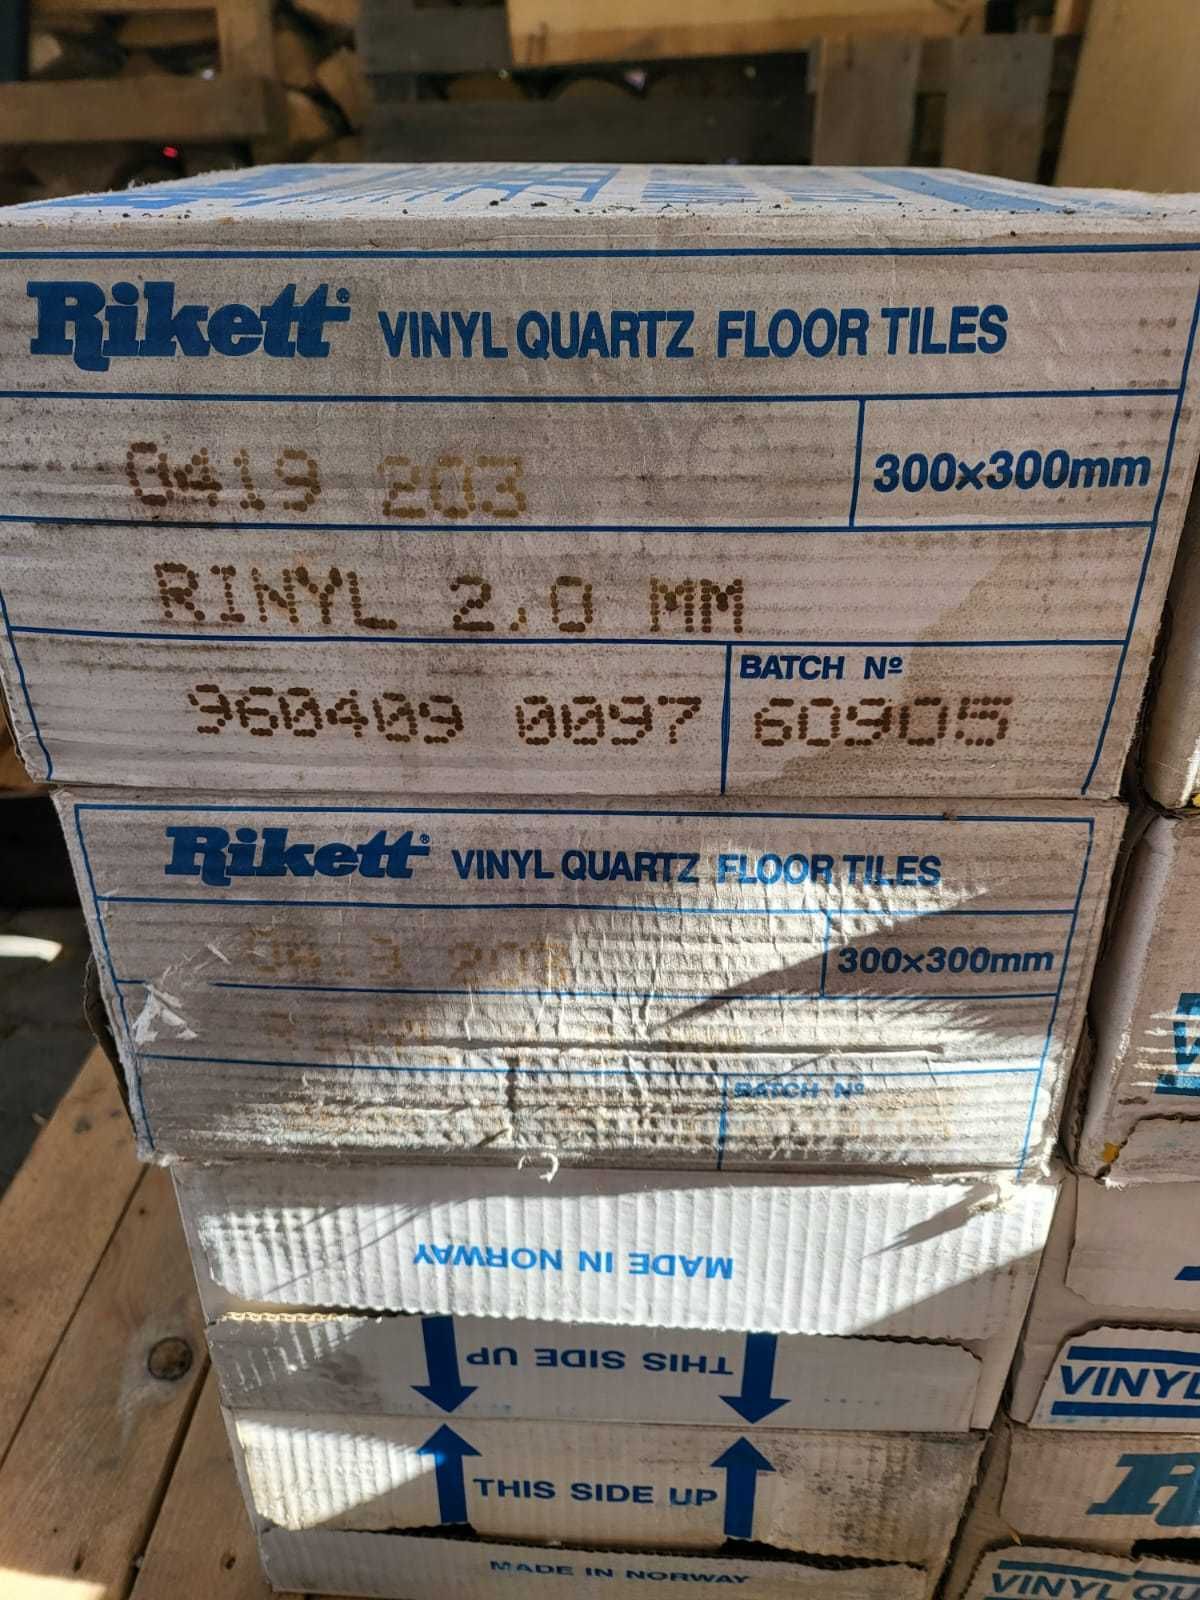 płytki winylowe firmy Rikett